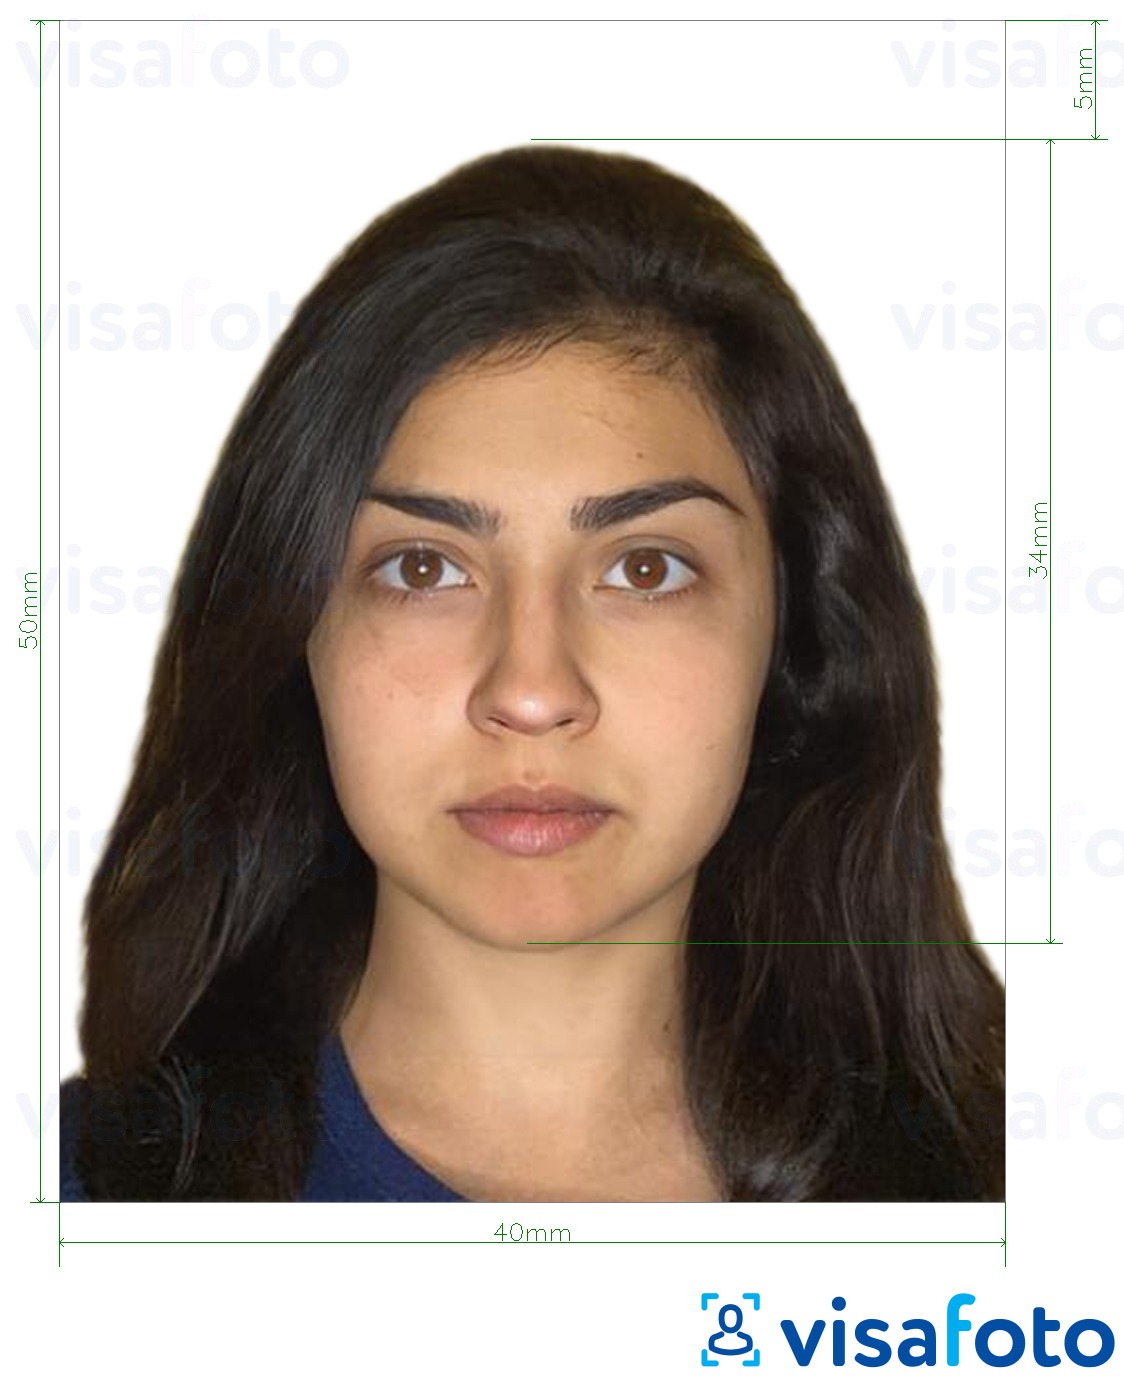 Contoh foto untuk Pasport Nikaragua 4x5 cm dengan spesifikasi saiz yang tepat.